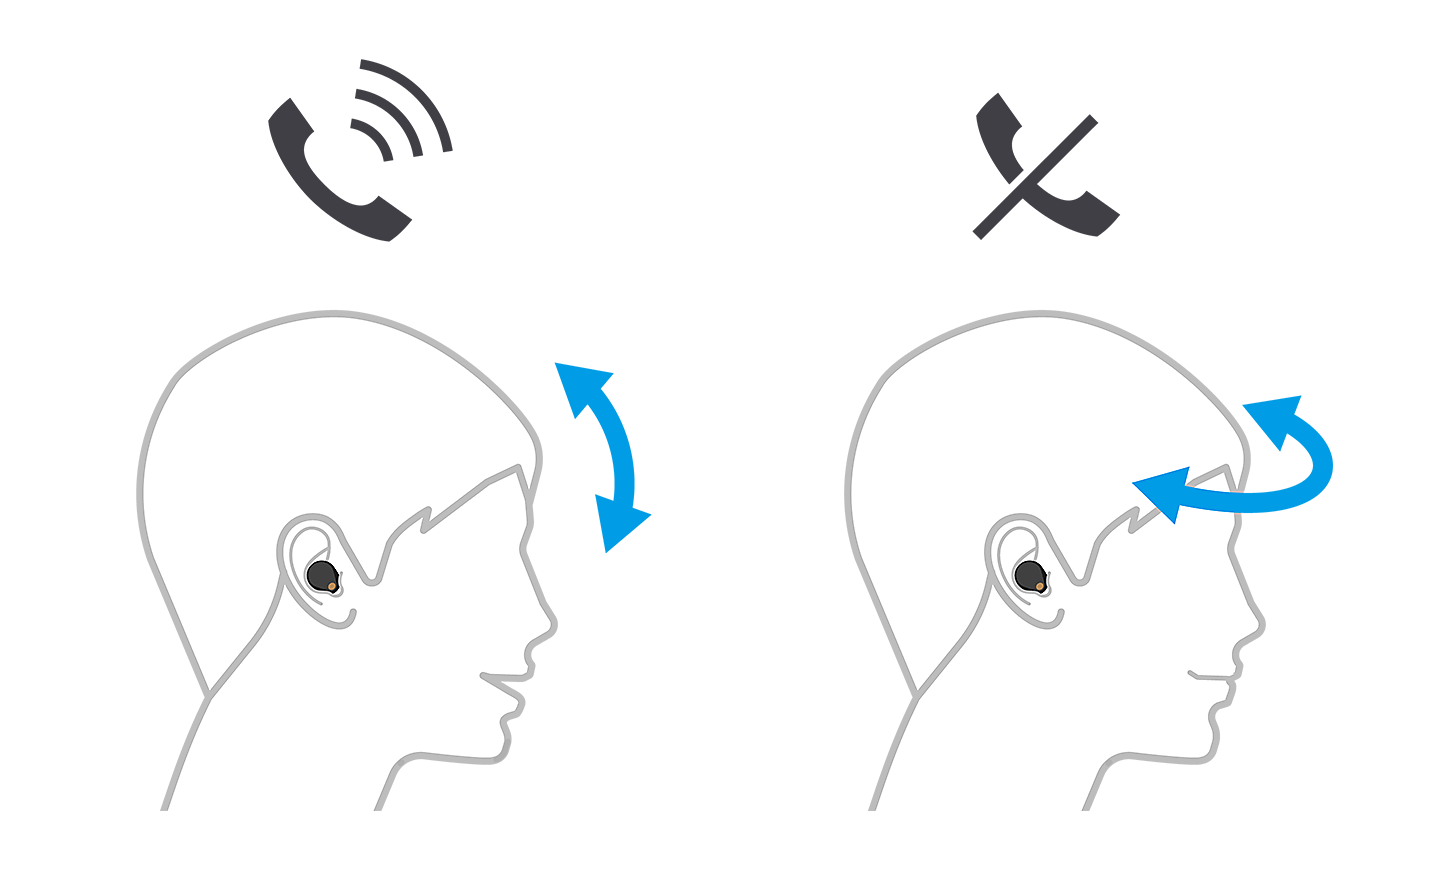 Image de deux têtes, celle de gauche acceptant un appel avec des flèches vers le haut et vers le bas, celle de droite le refusant avec des flèches de gauche à droite